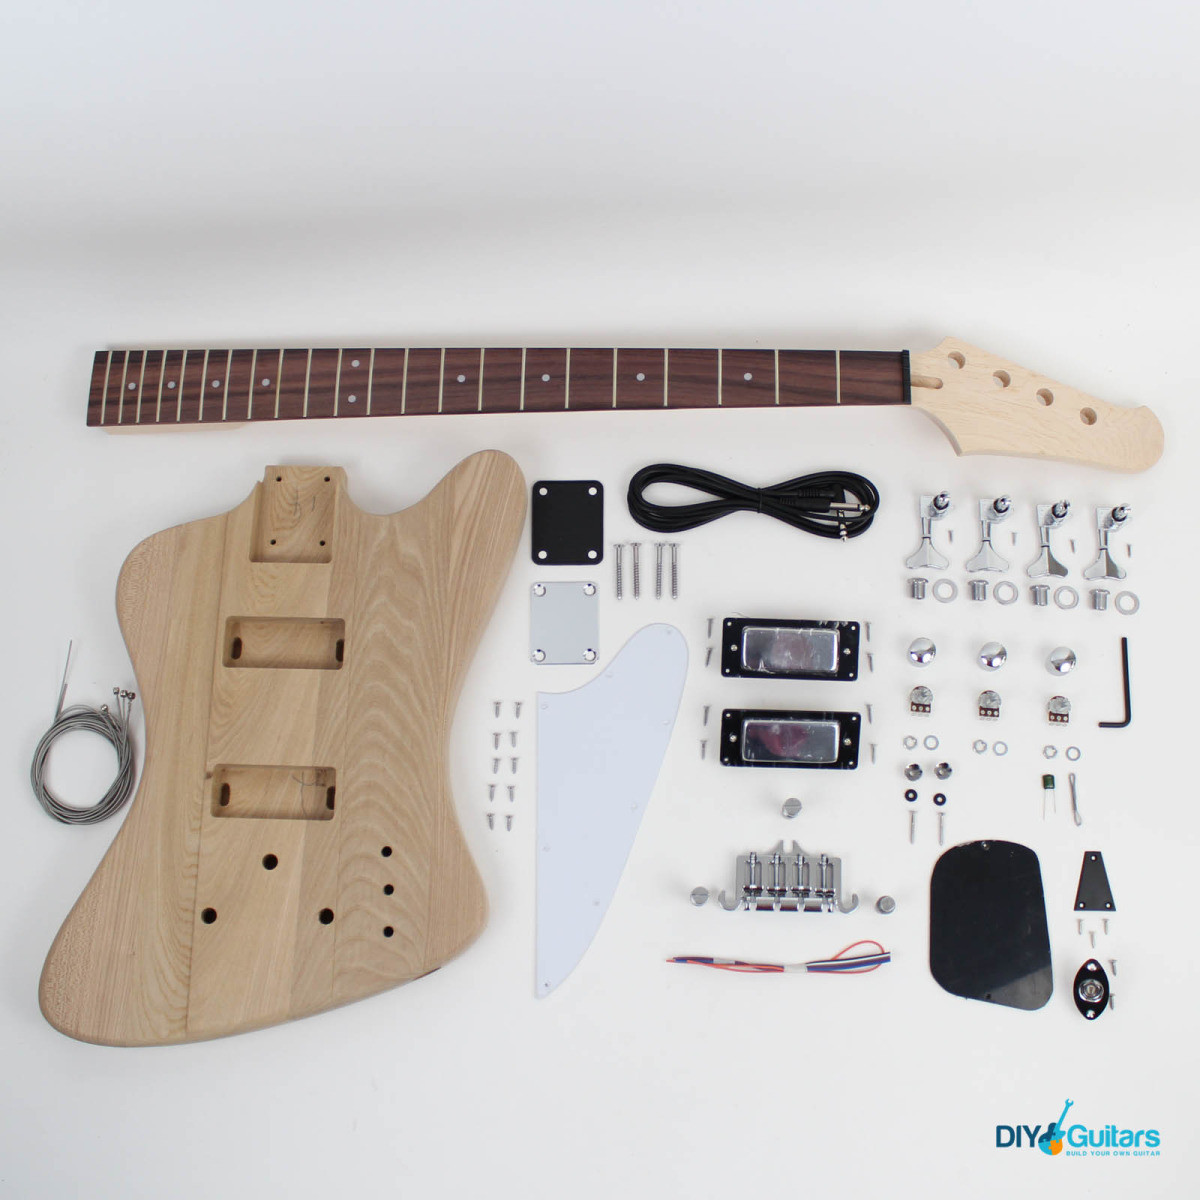 DIY Bass Guitar Kits
 Gibson Thunderbird Style Bass Guitar Kit DIY Guitars